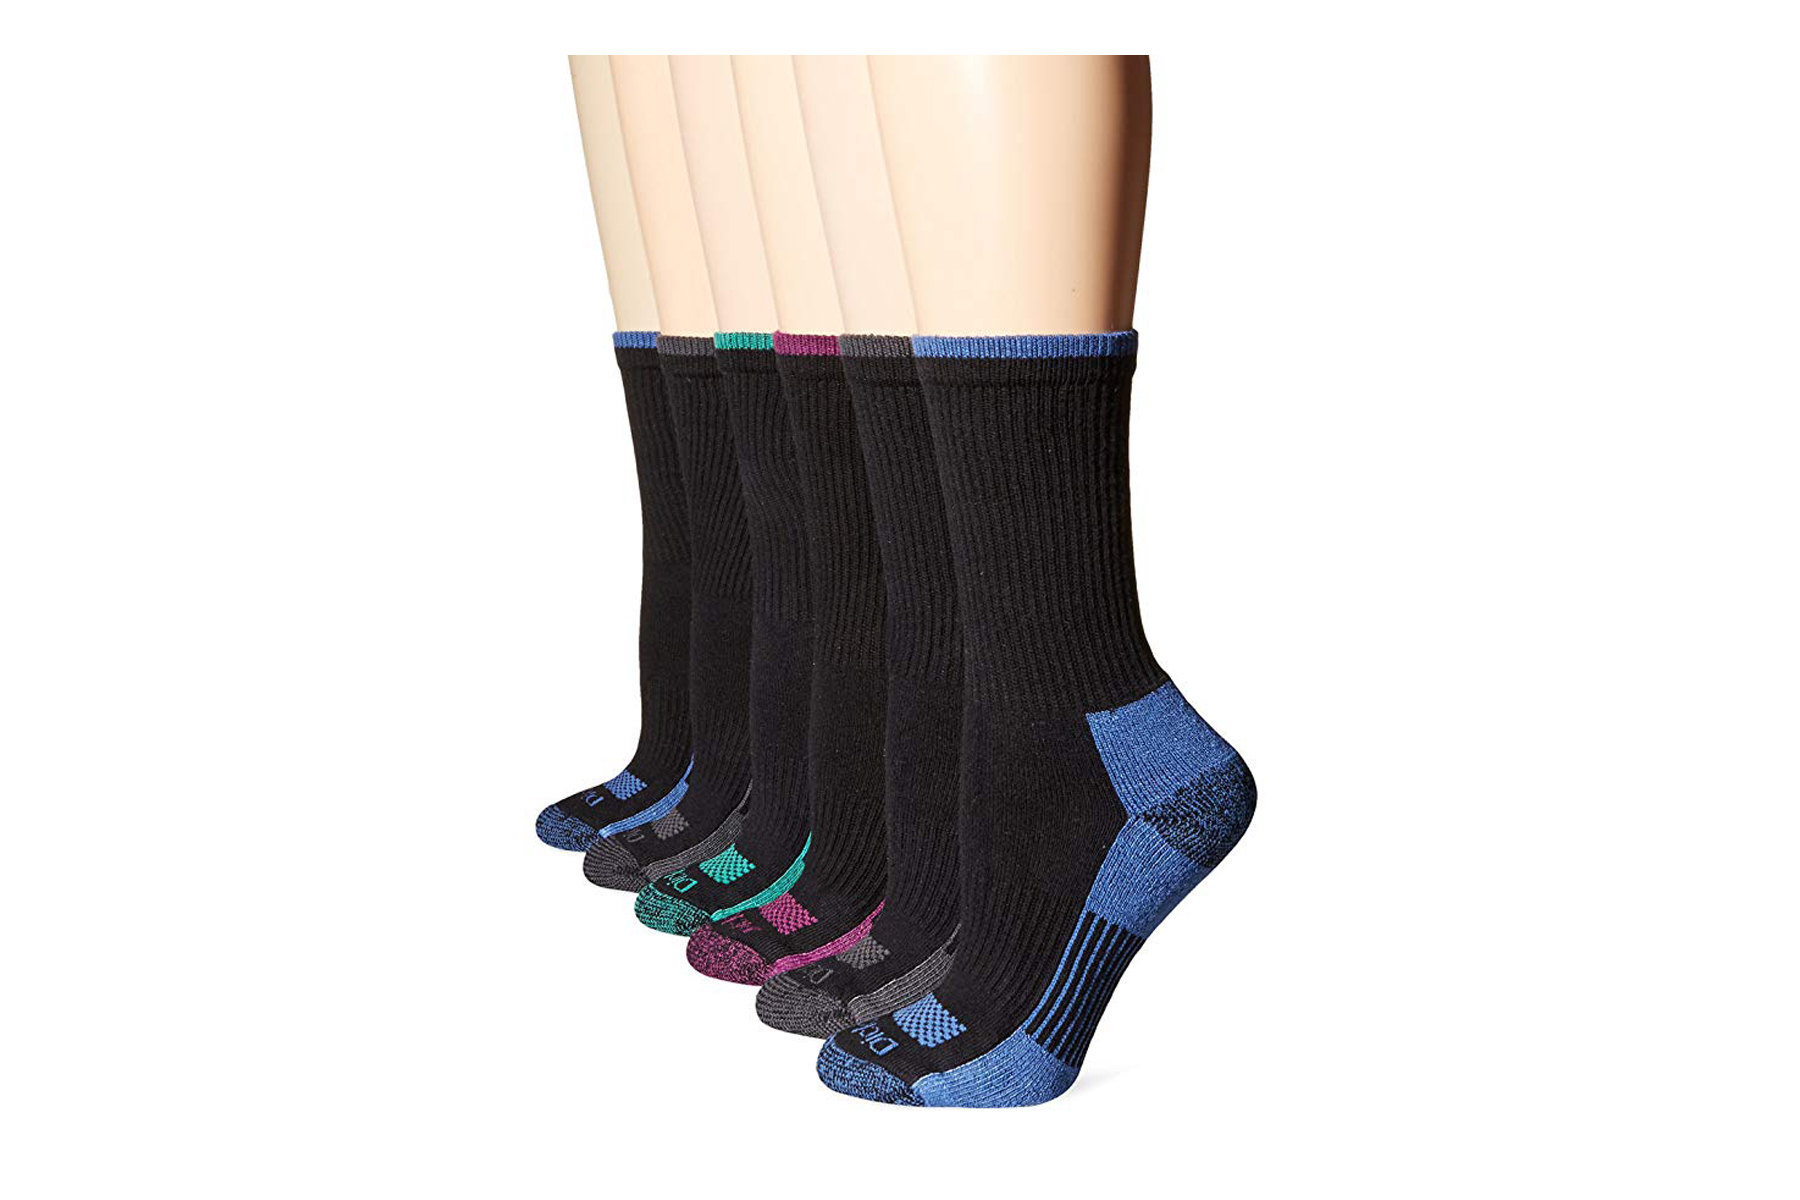 9 Best Moisture-Wicking Socks for Women